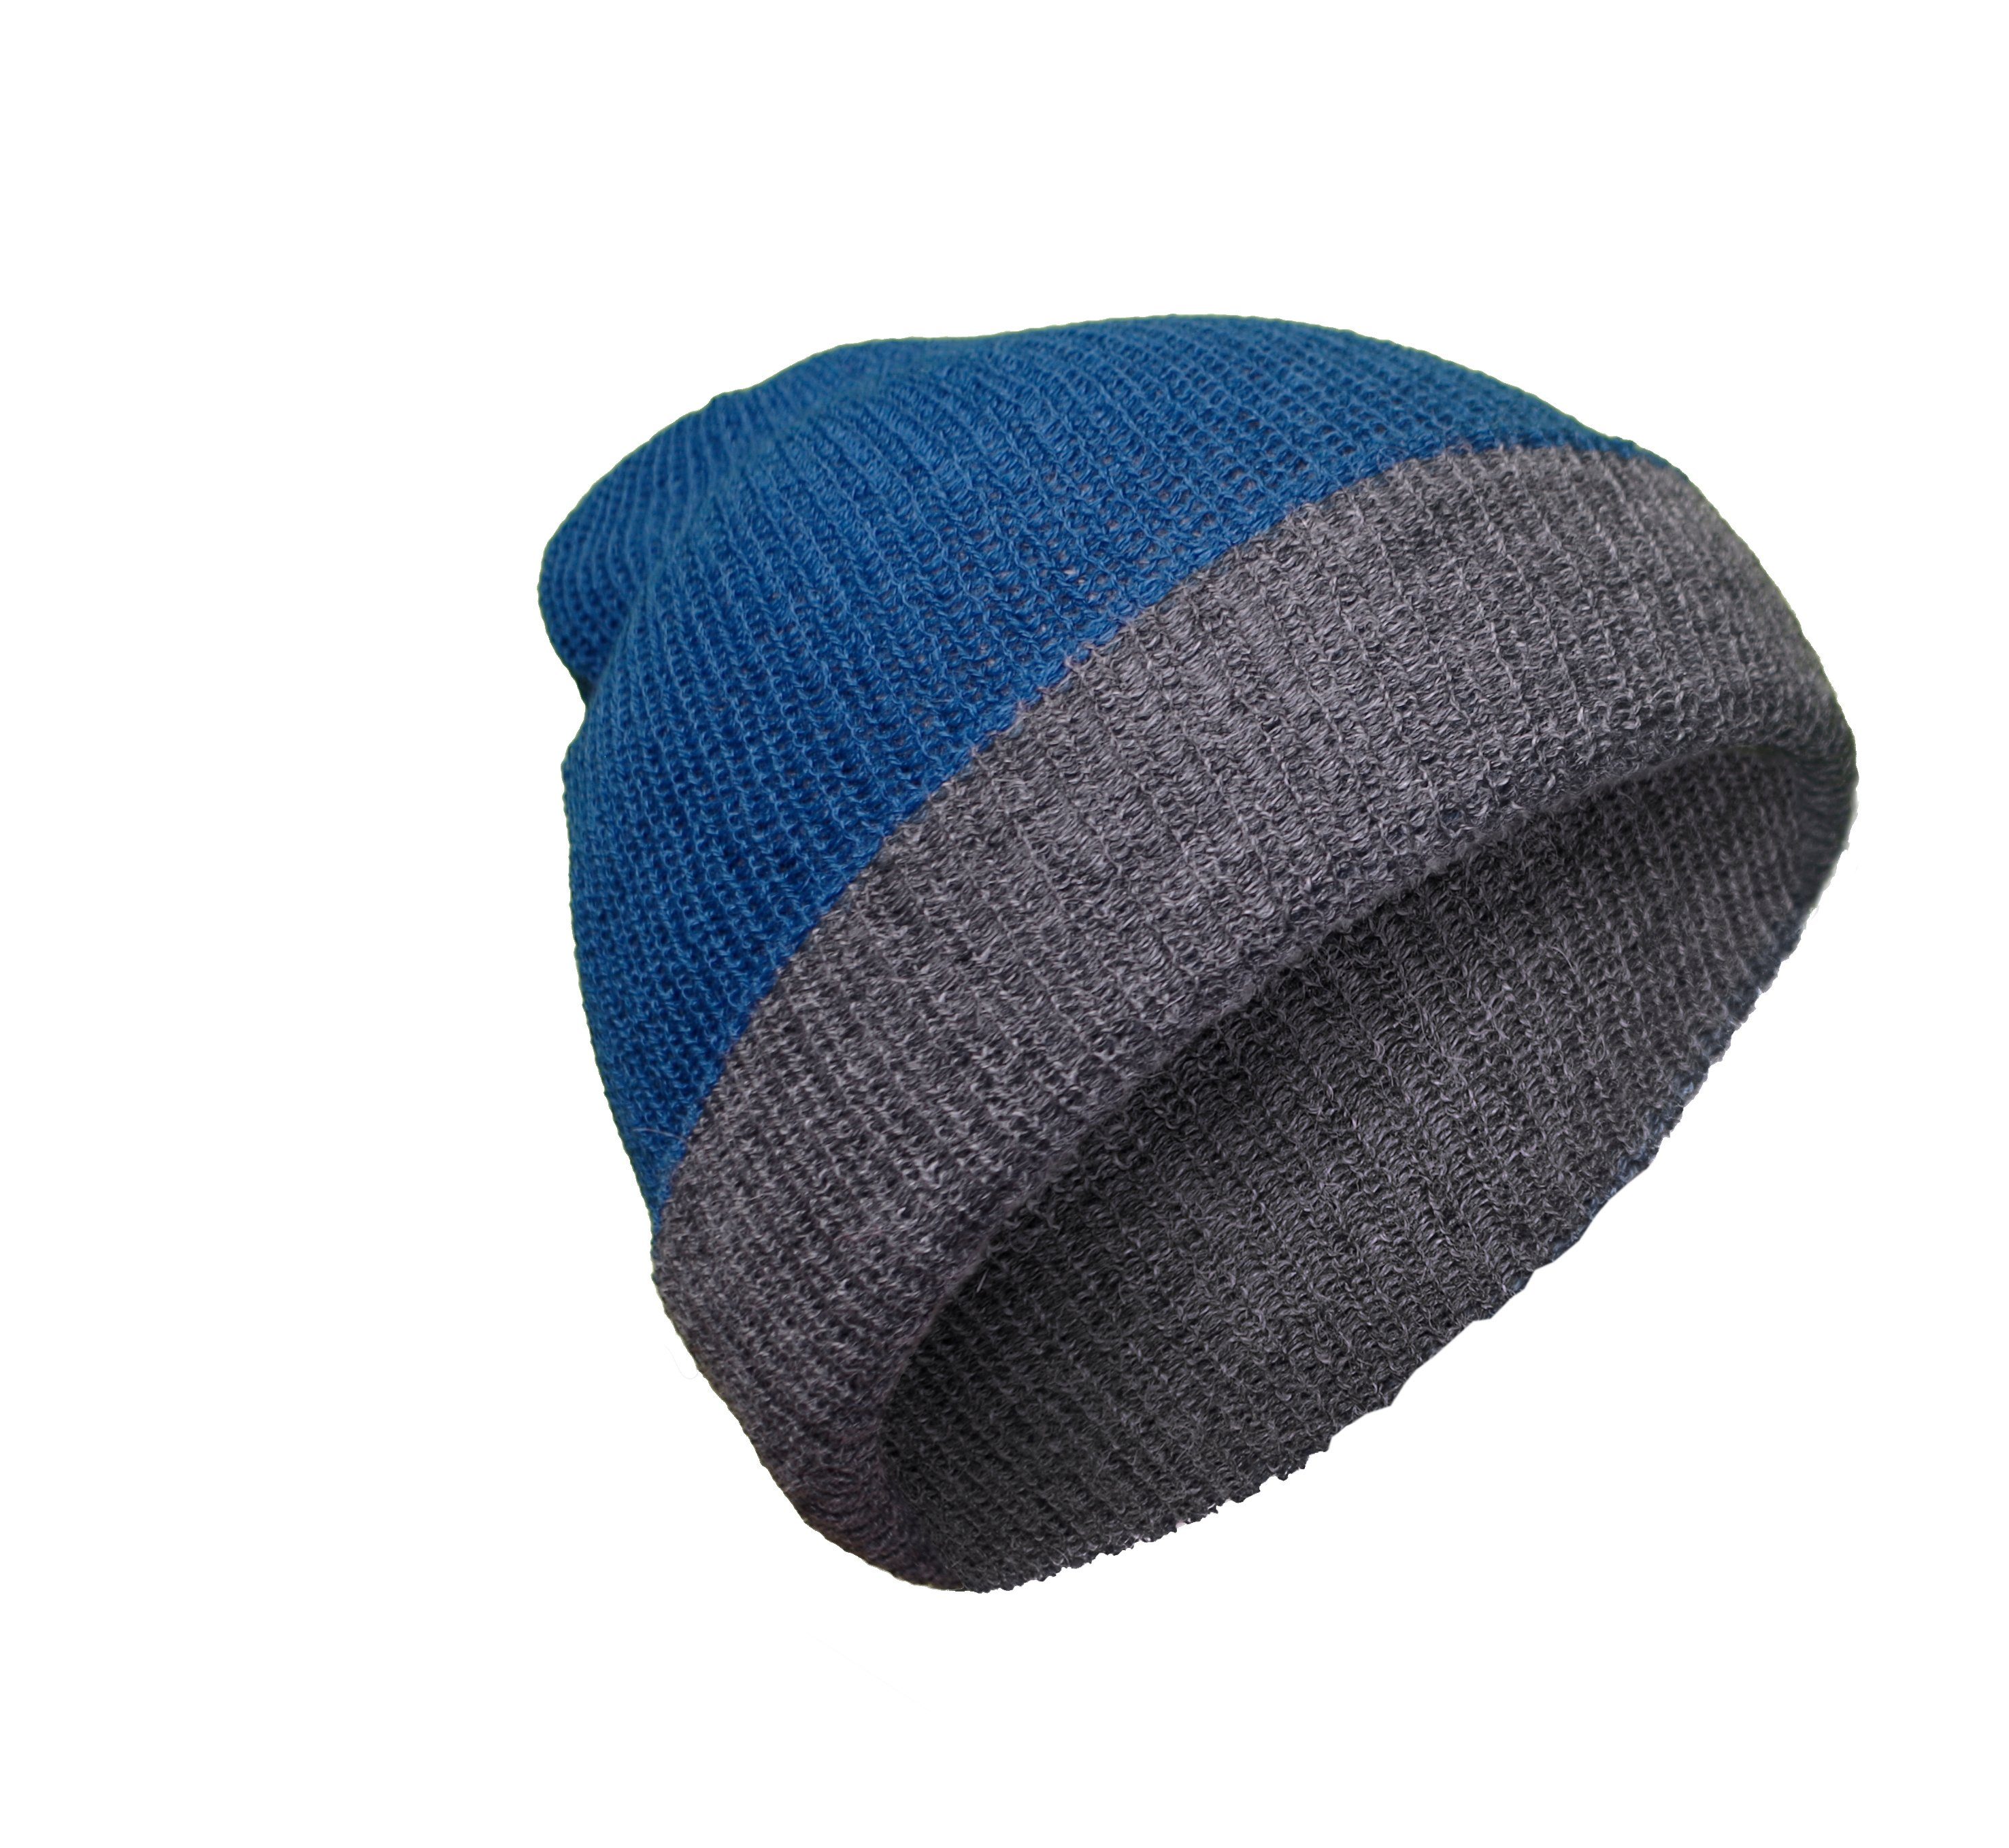 grau Strickmütze Alpaka Mütze Gear 100% blau aus / Posh Alpakawolle Rettolana